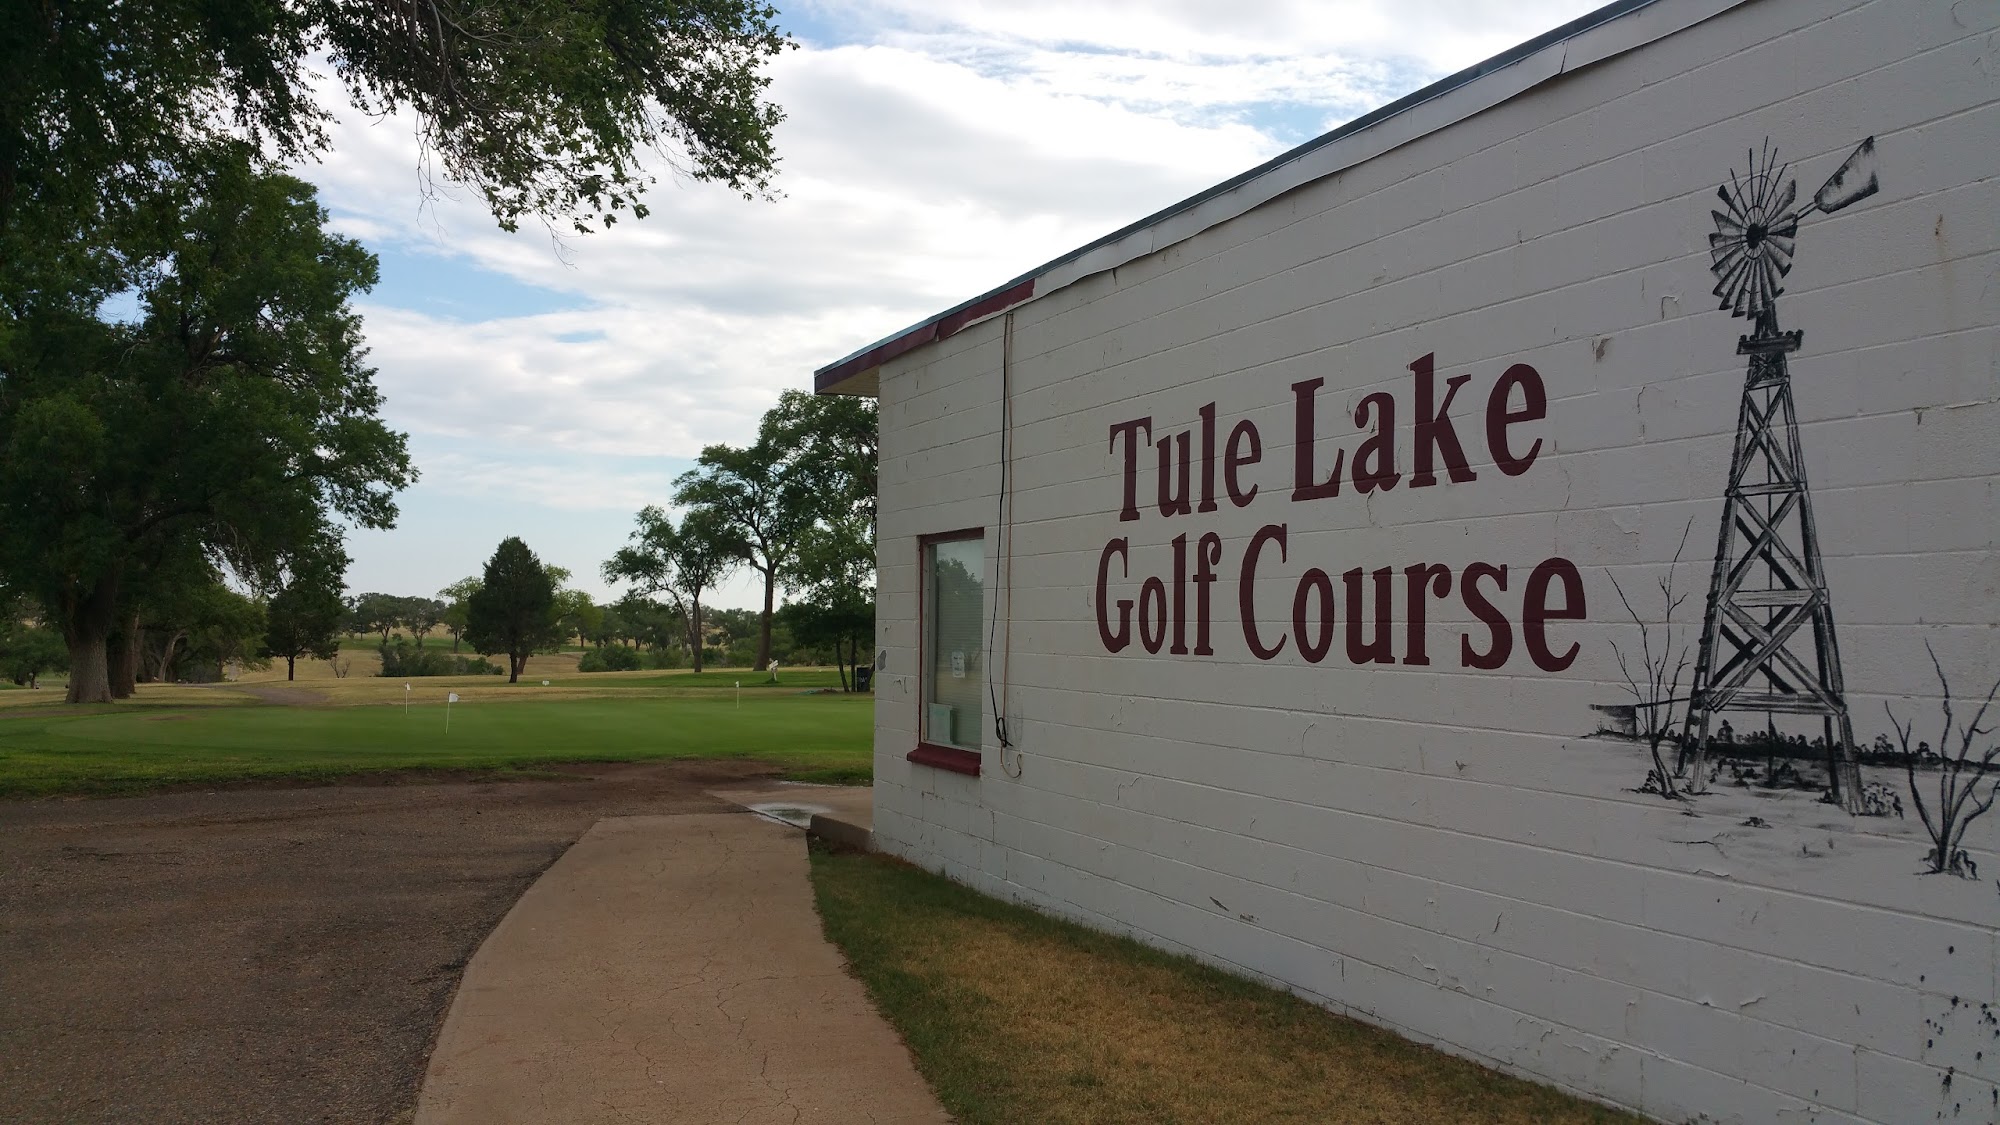 Tule Lake Golf Course/Ken's Place 1850 Co Rd 16, Tulia Texas 79088